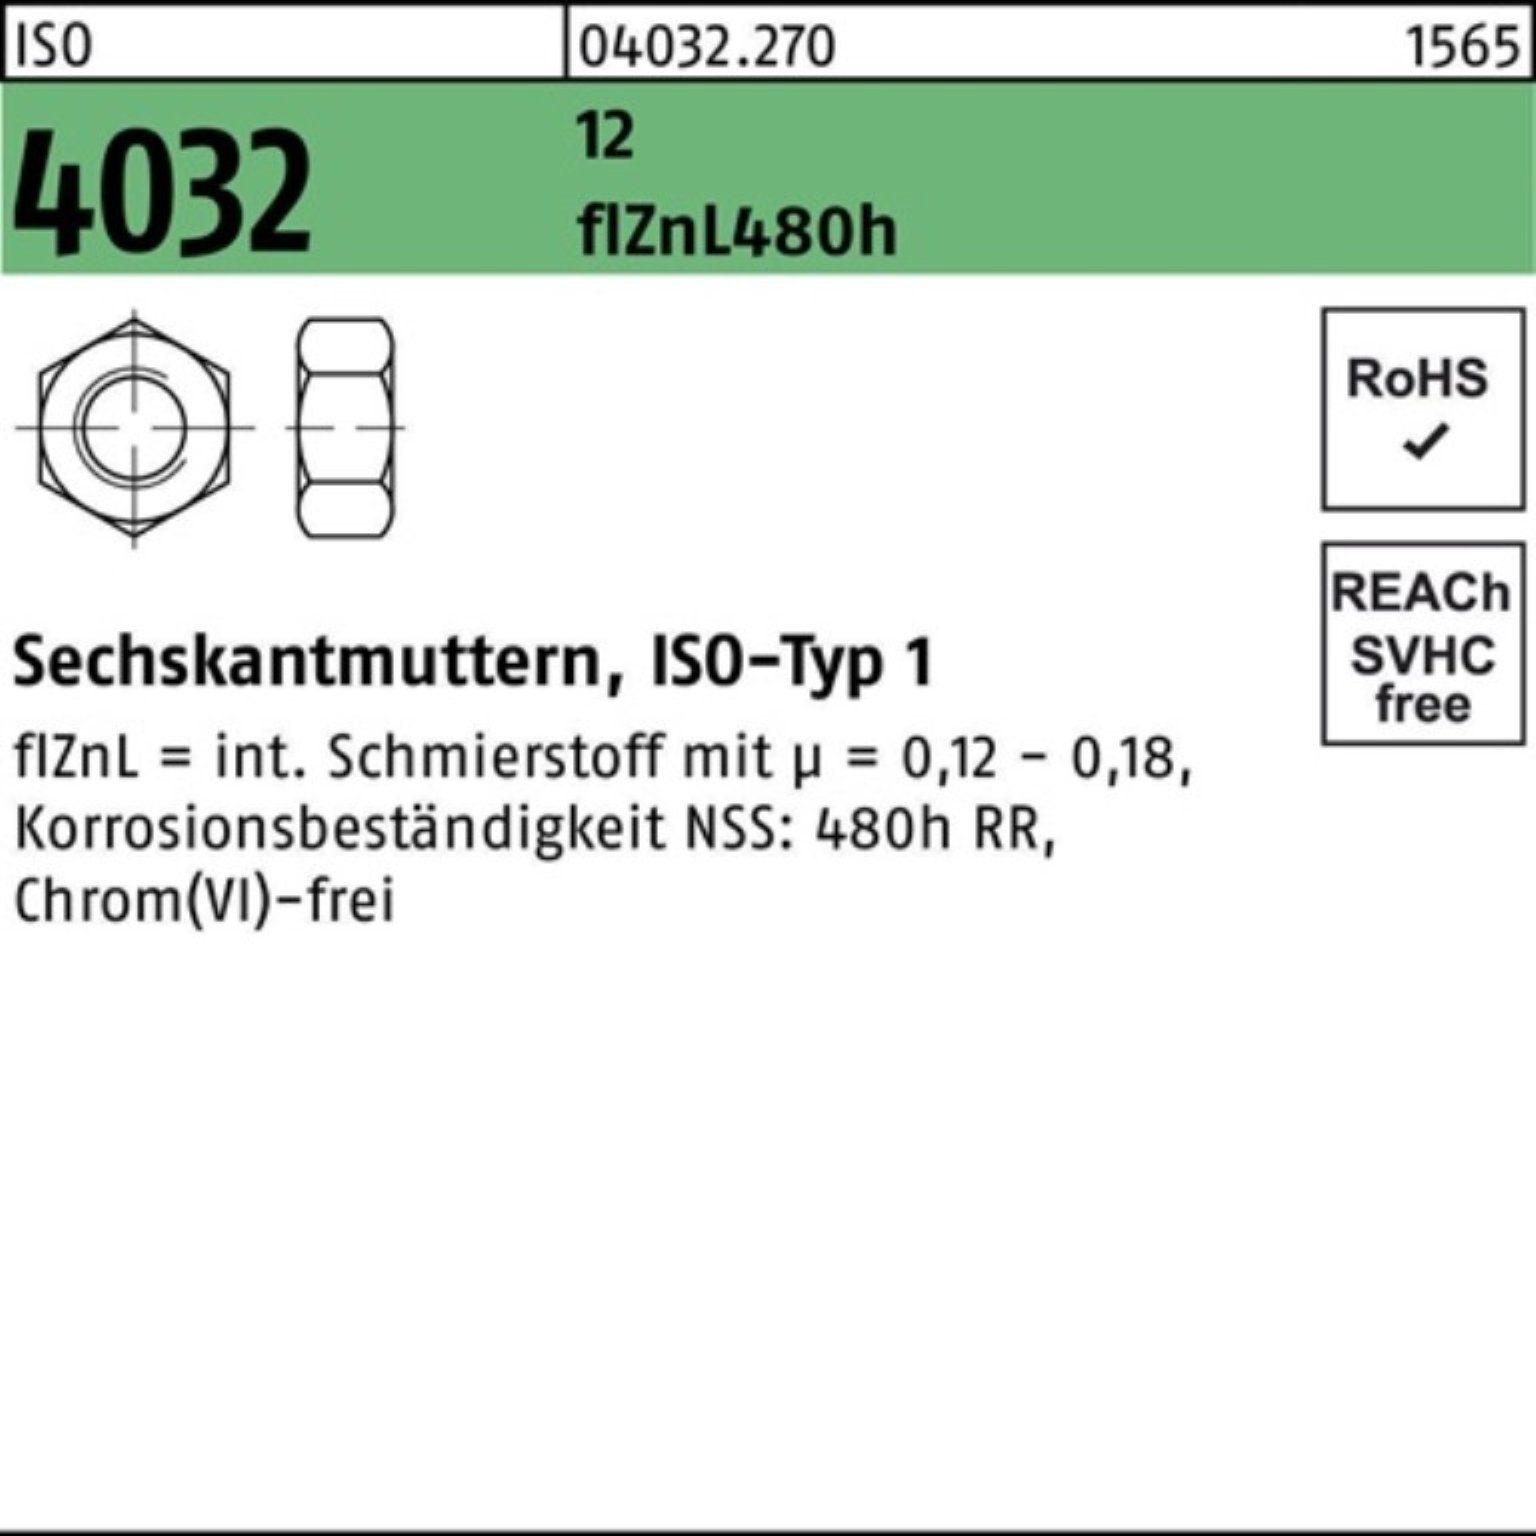 4032 ISO 12 Sechskantmutter 480h 1 M16 zinklamellenb. Bufab flZnL Pack 100er Muttern